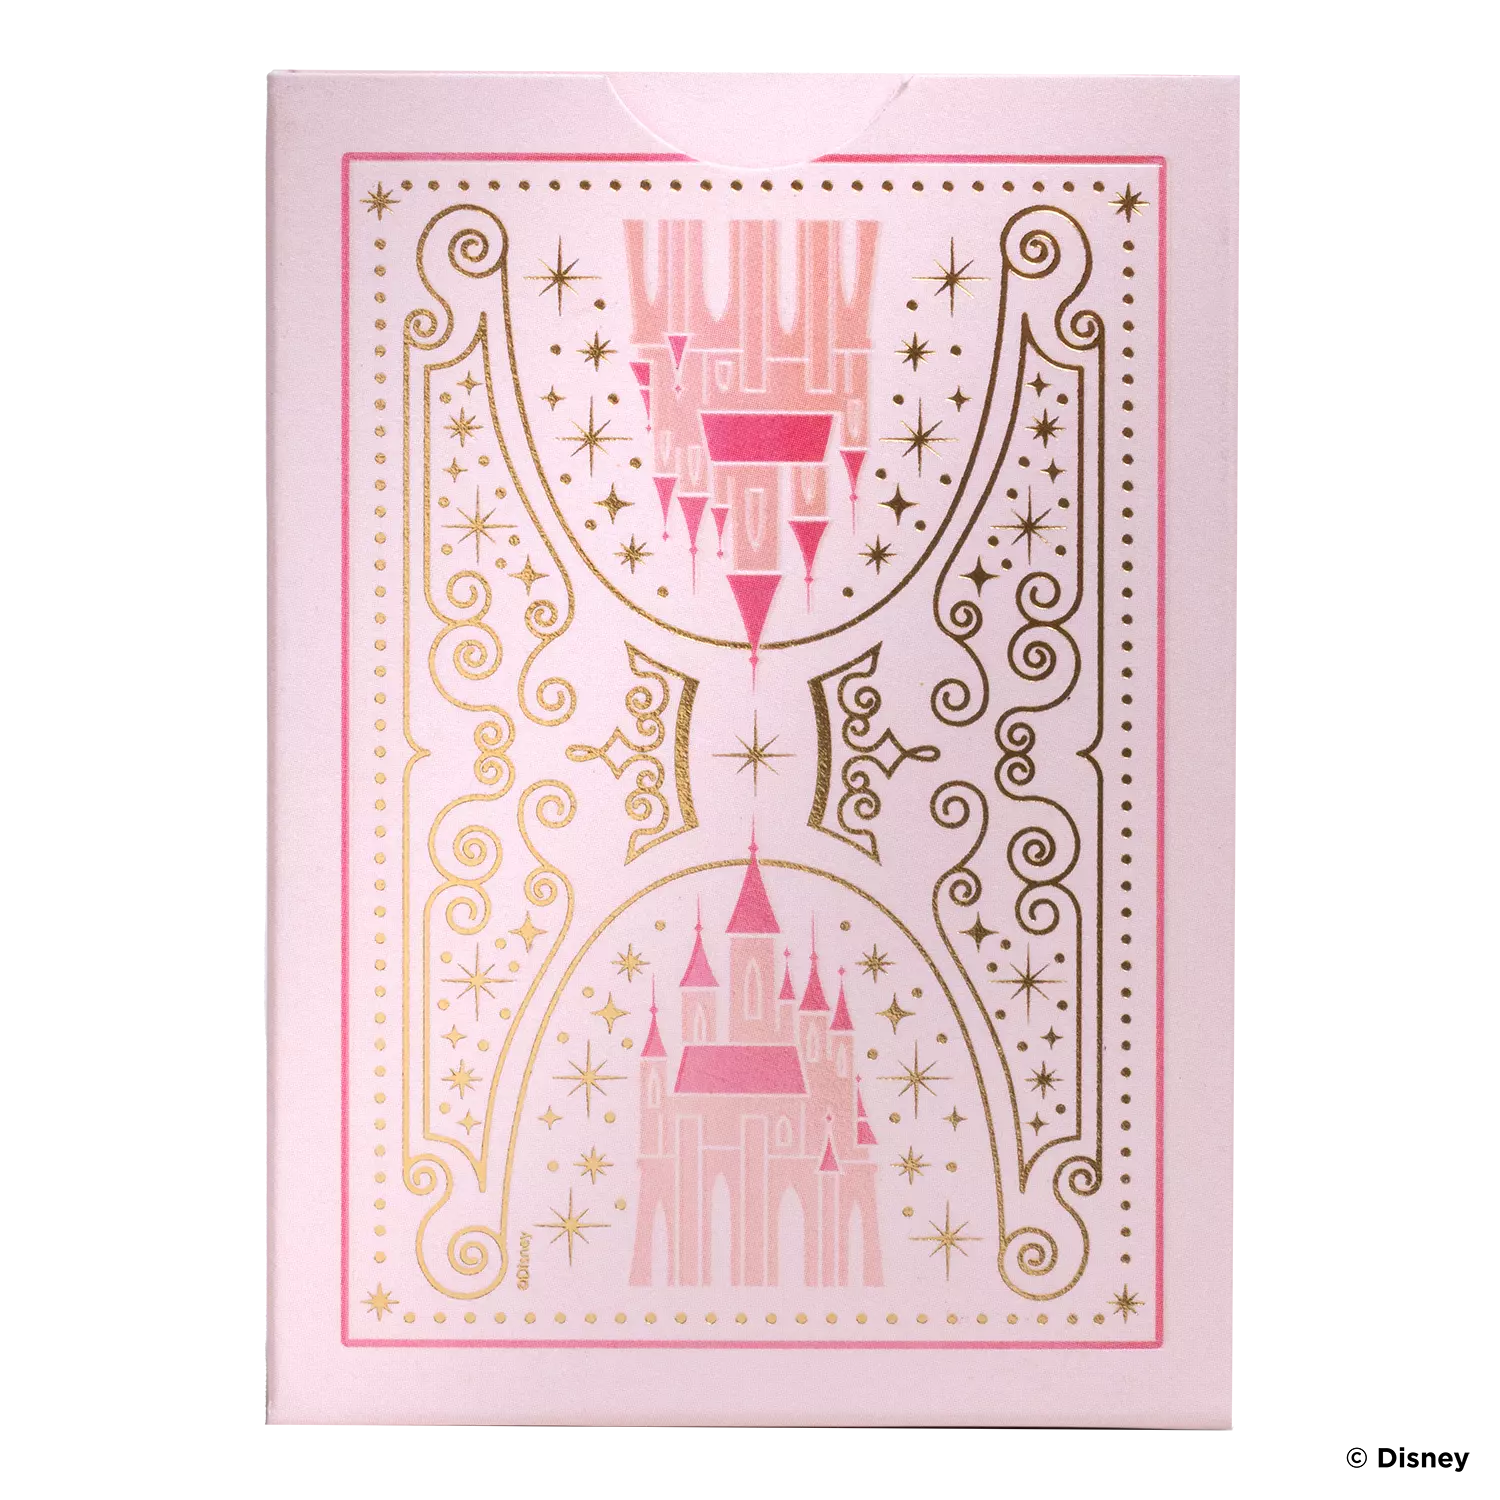 Eine Bicycle Ultimate Bicycle Disney Princess pink rosa Kartenschachtel steht mit sichtbarer Rückseite vor einem weißem Hintergrund.